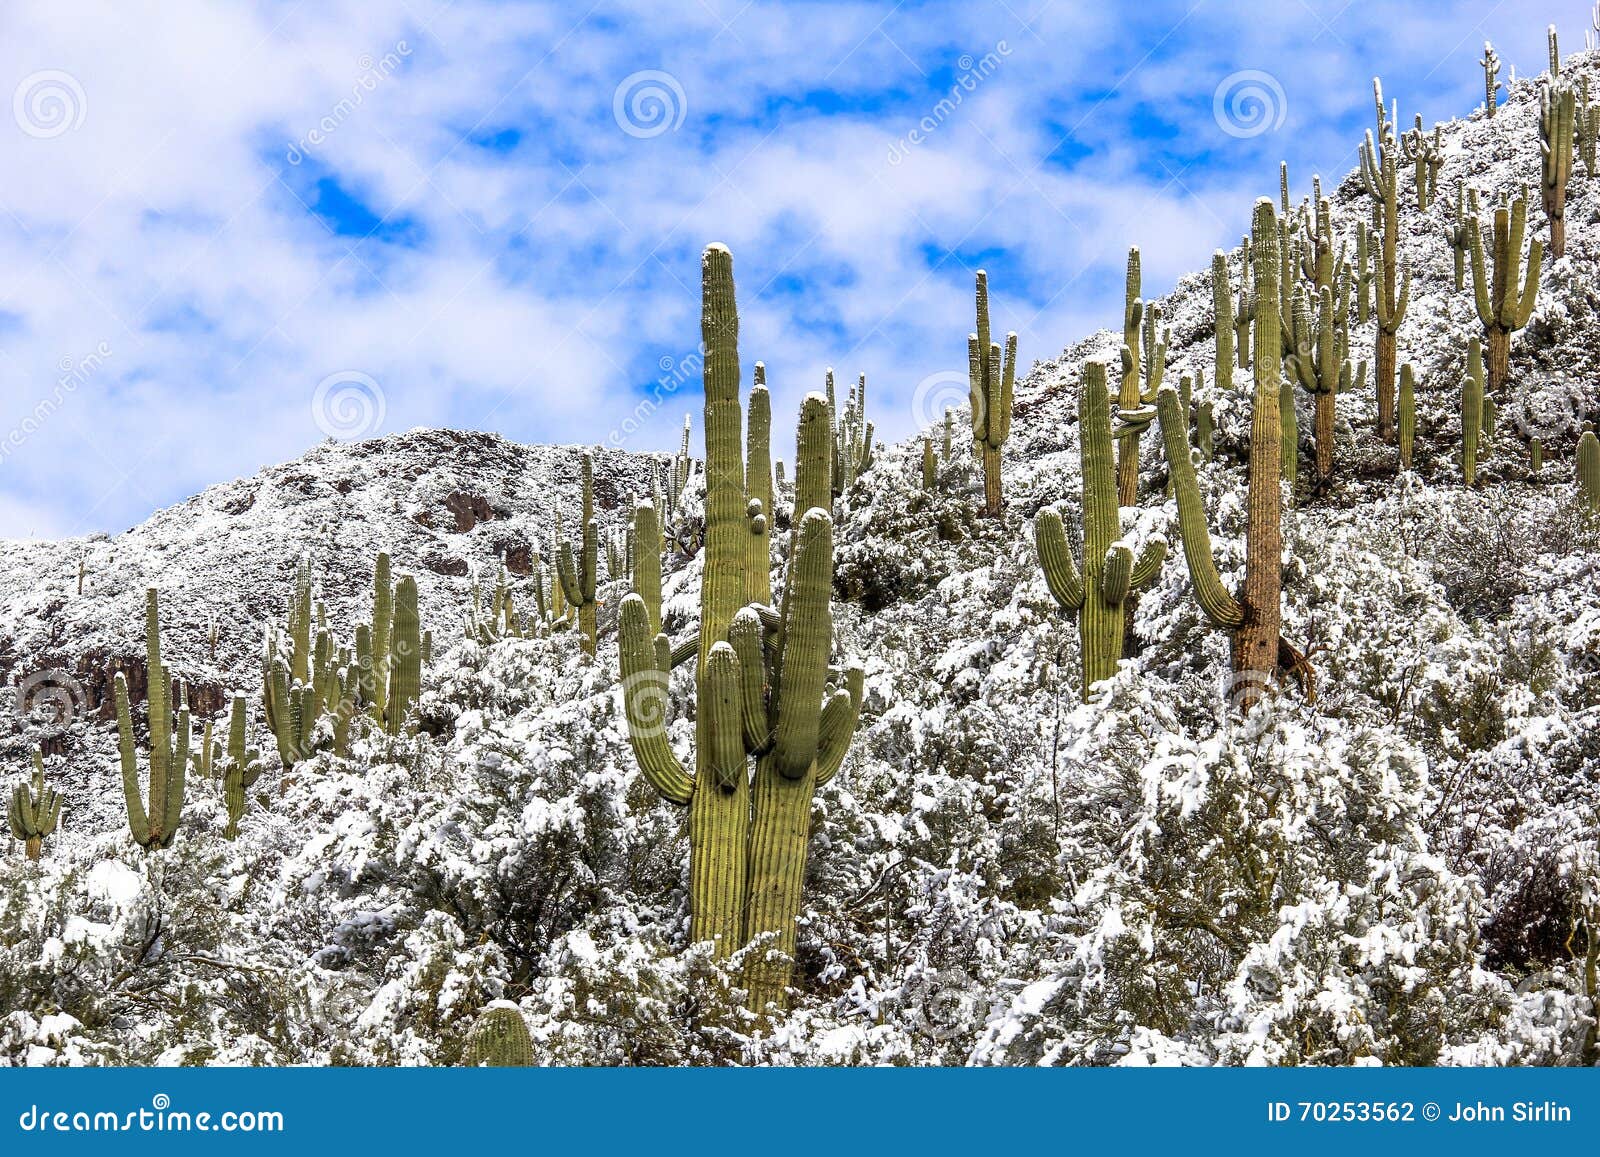 Cactus saguaro invierno fotografías e imágenes de alta resolución - Página  2 - Alamy